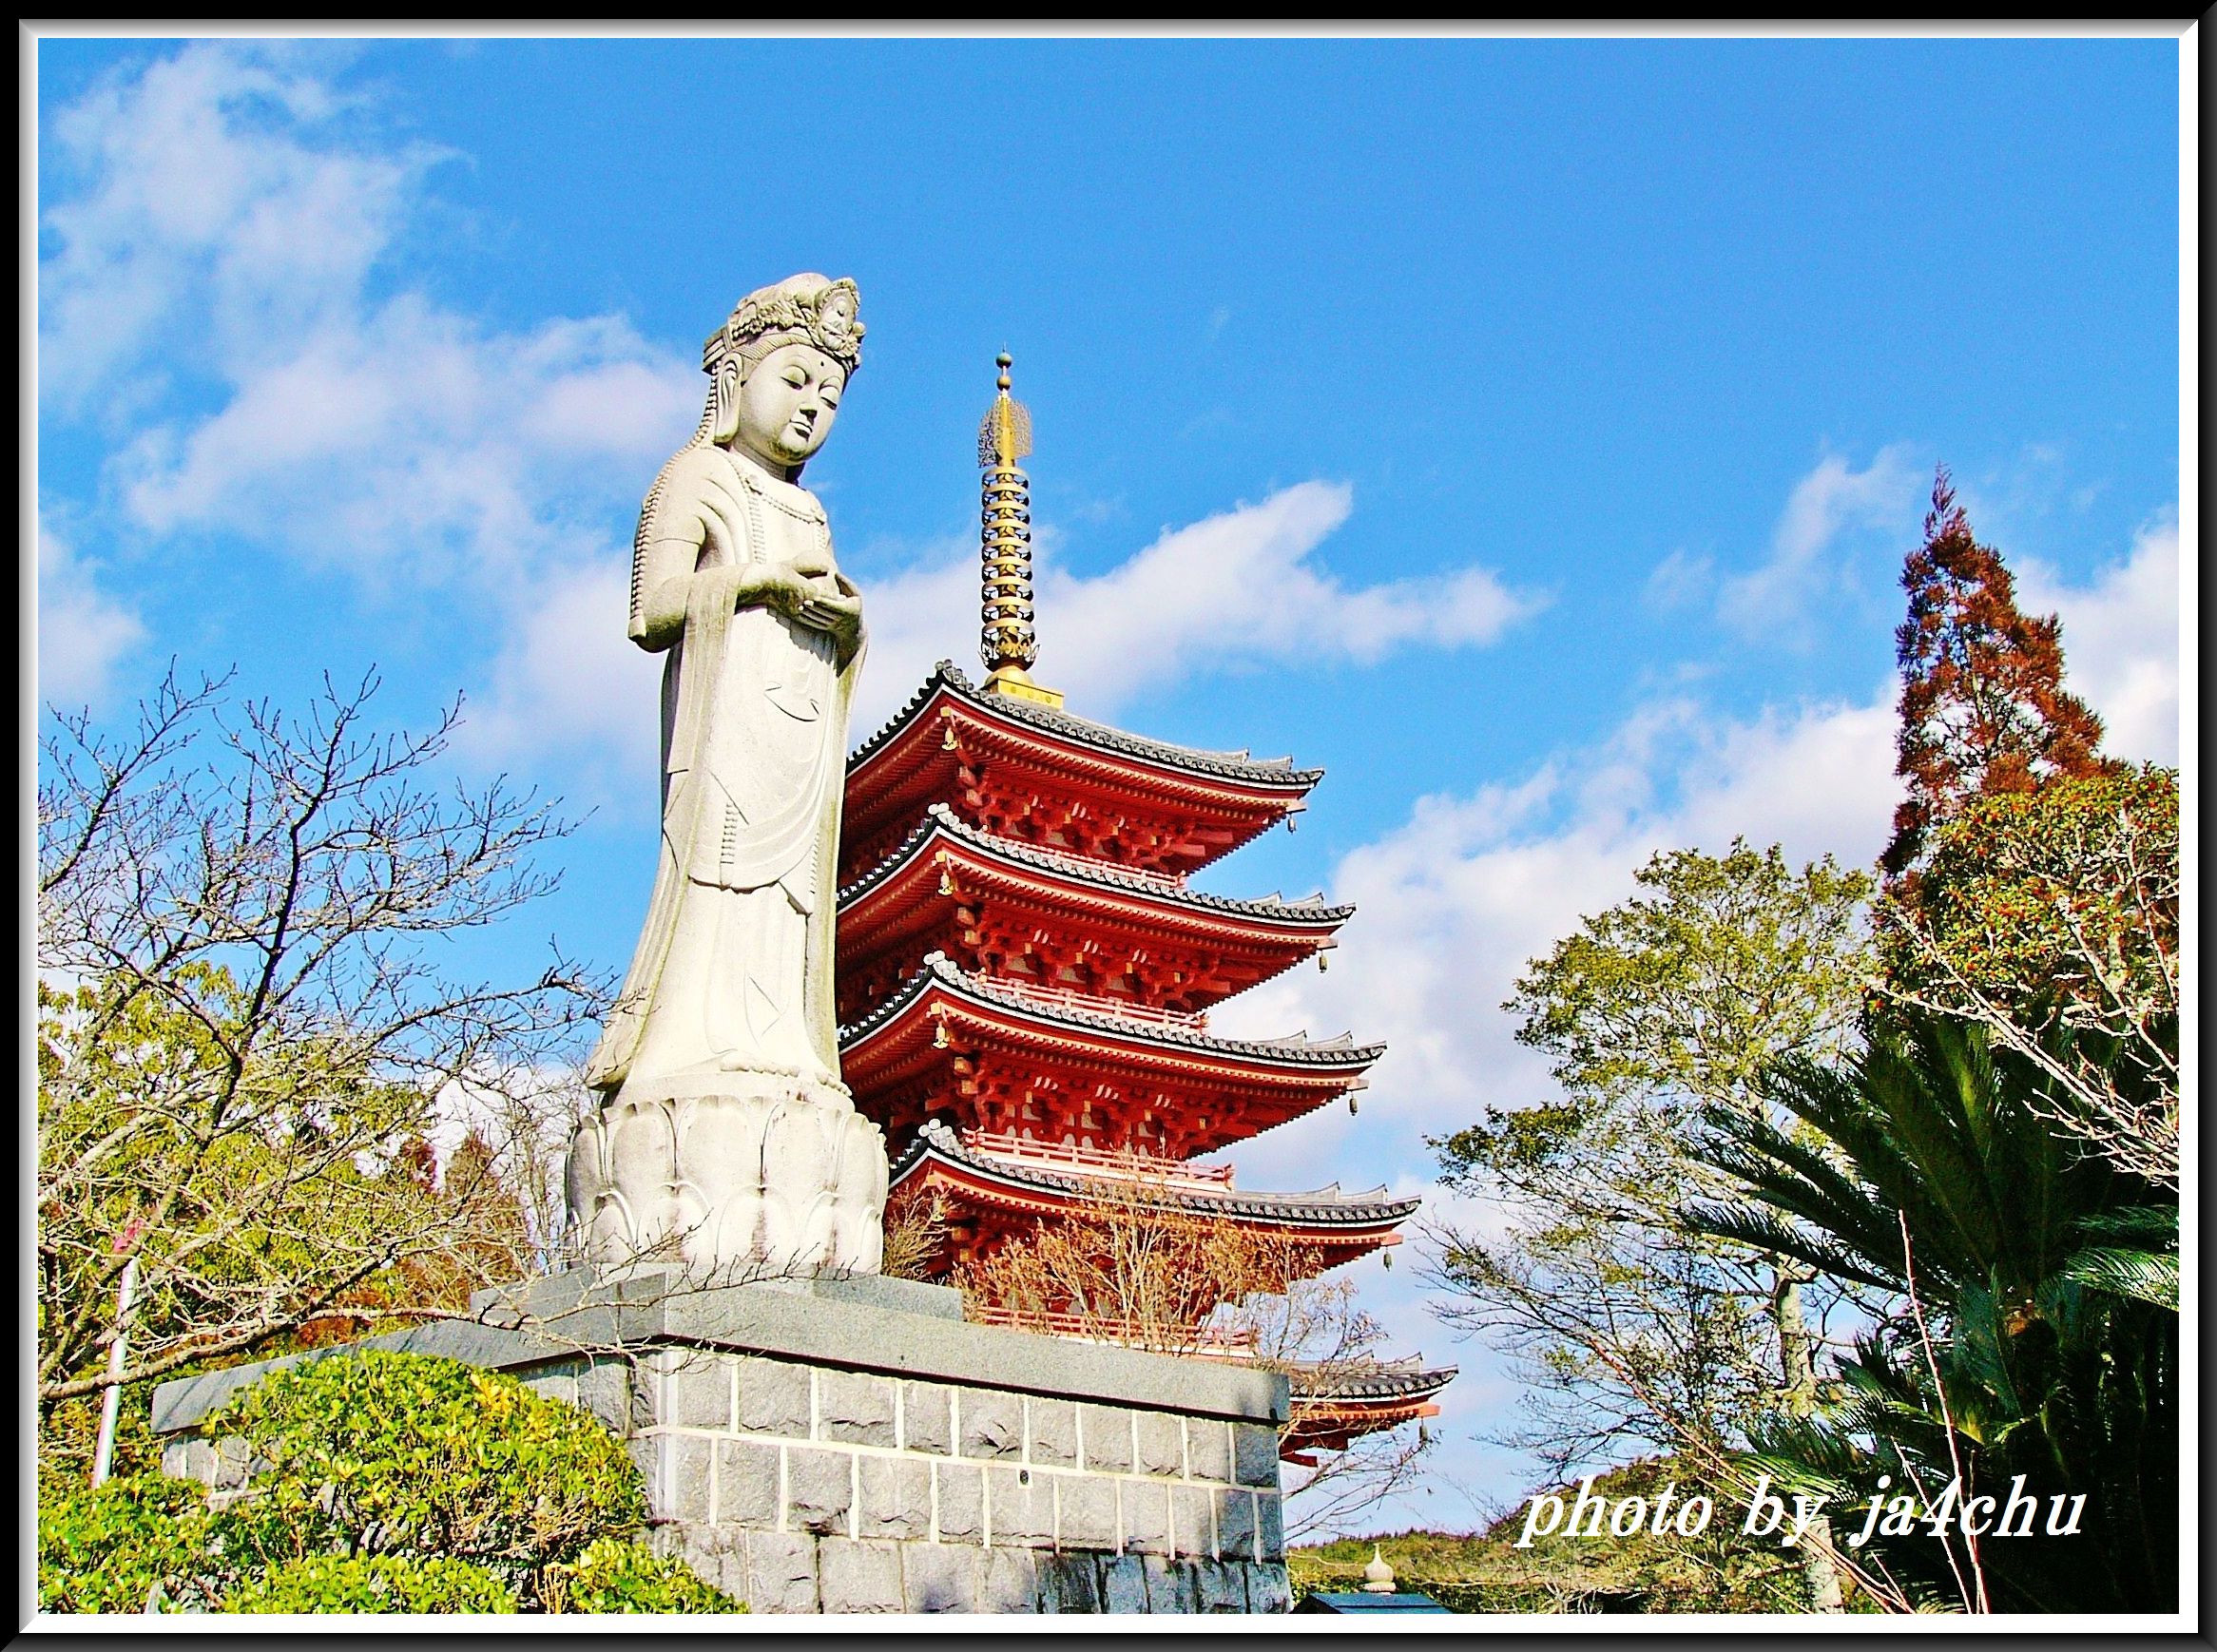 神社・仏閣・教会: .ja4chu blog